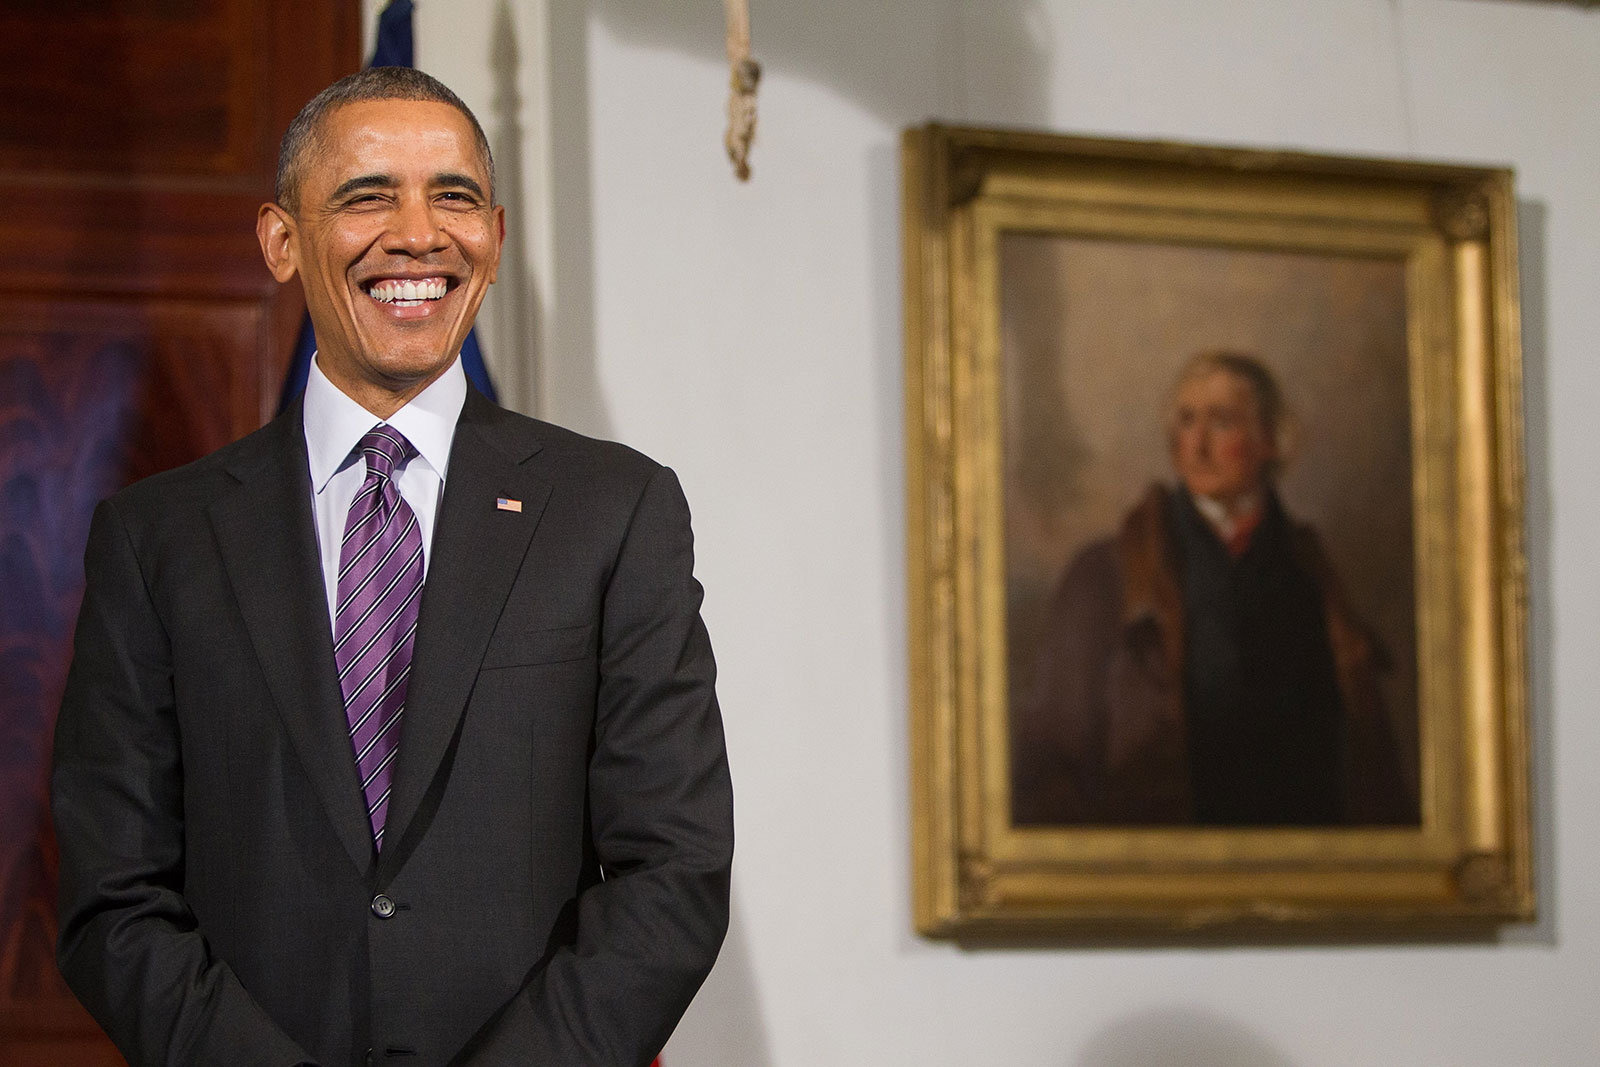 President Barak Obama in Monticello's Entrance Hall in 2014